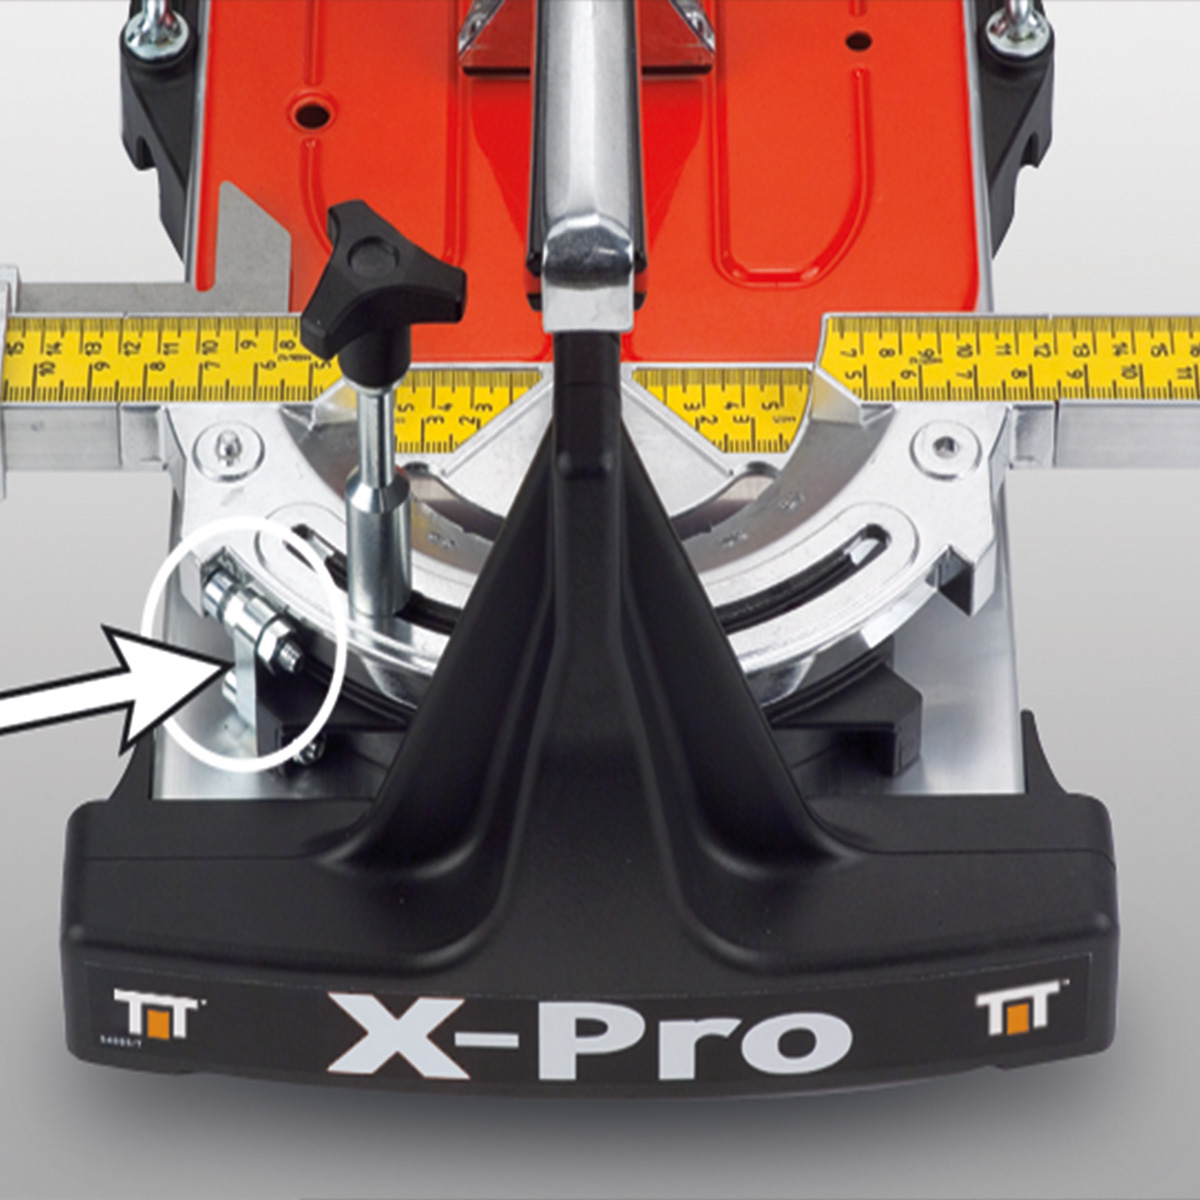 X-PRO 85 ručni sekač pločica 